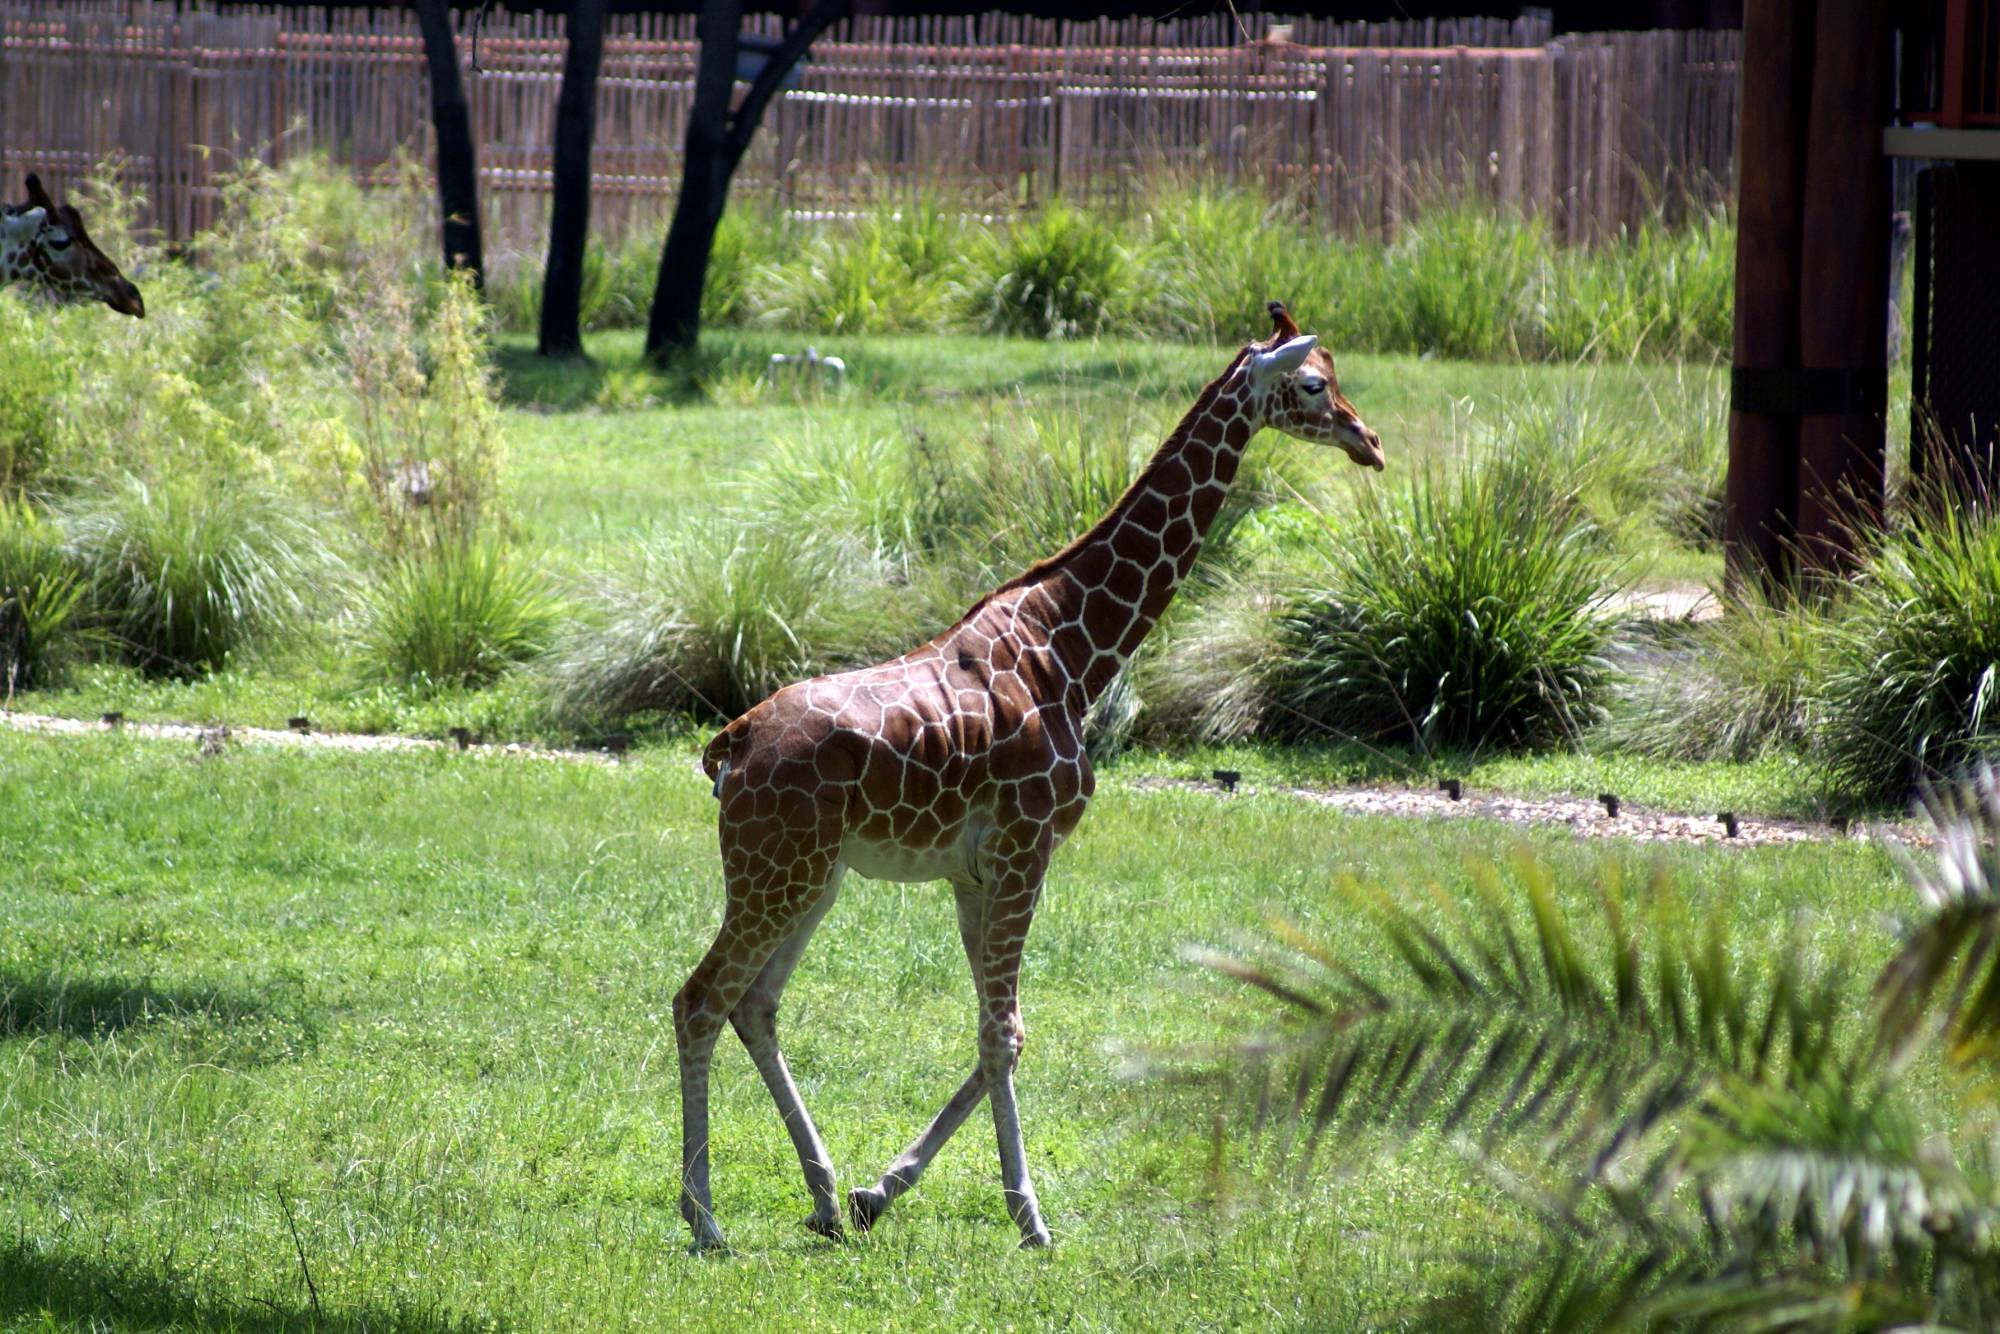 Giraffe at Kidani Village 2